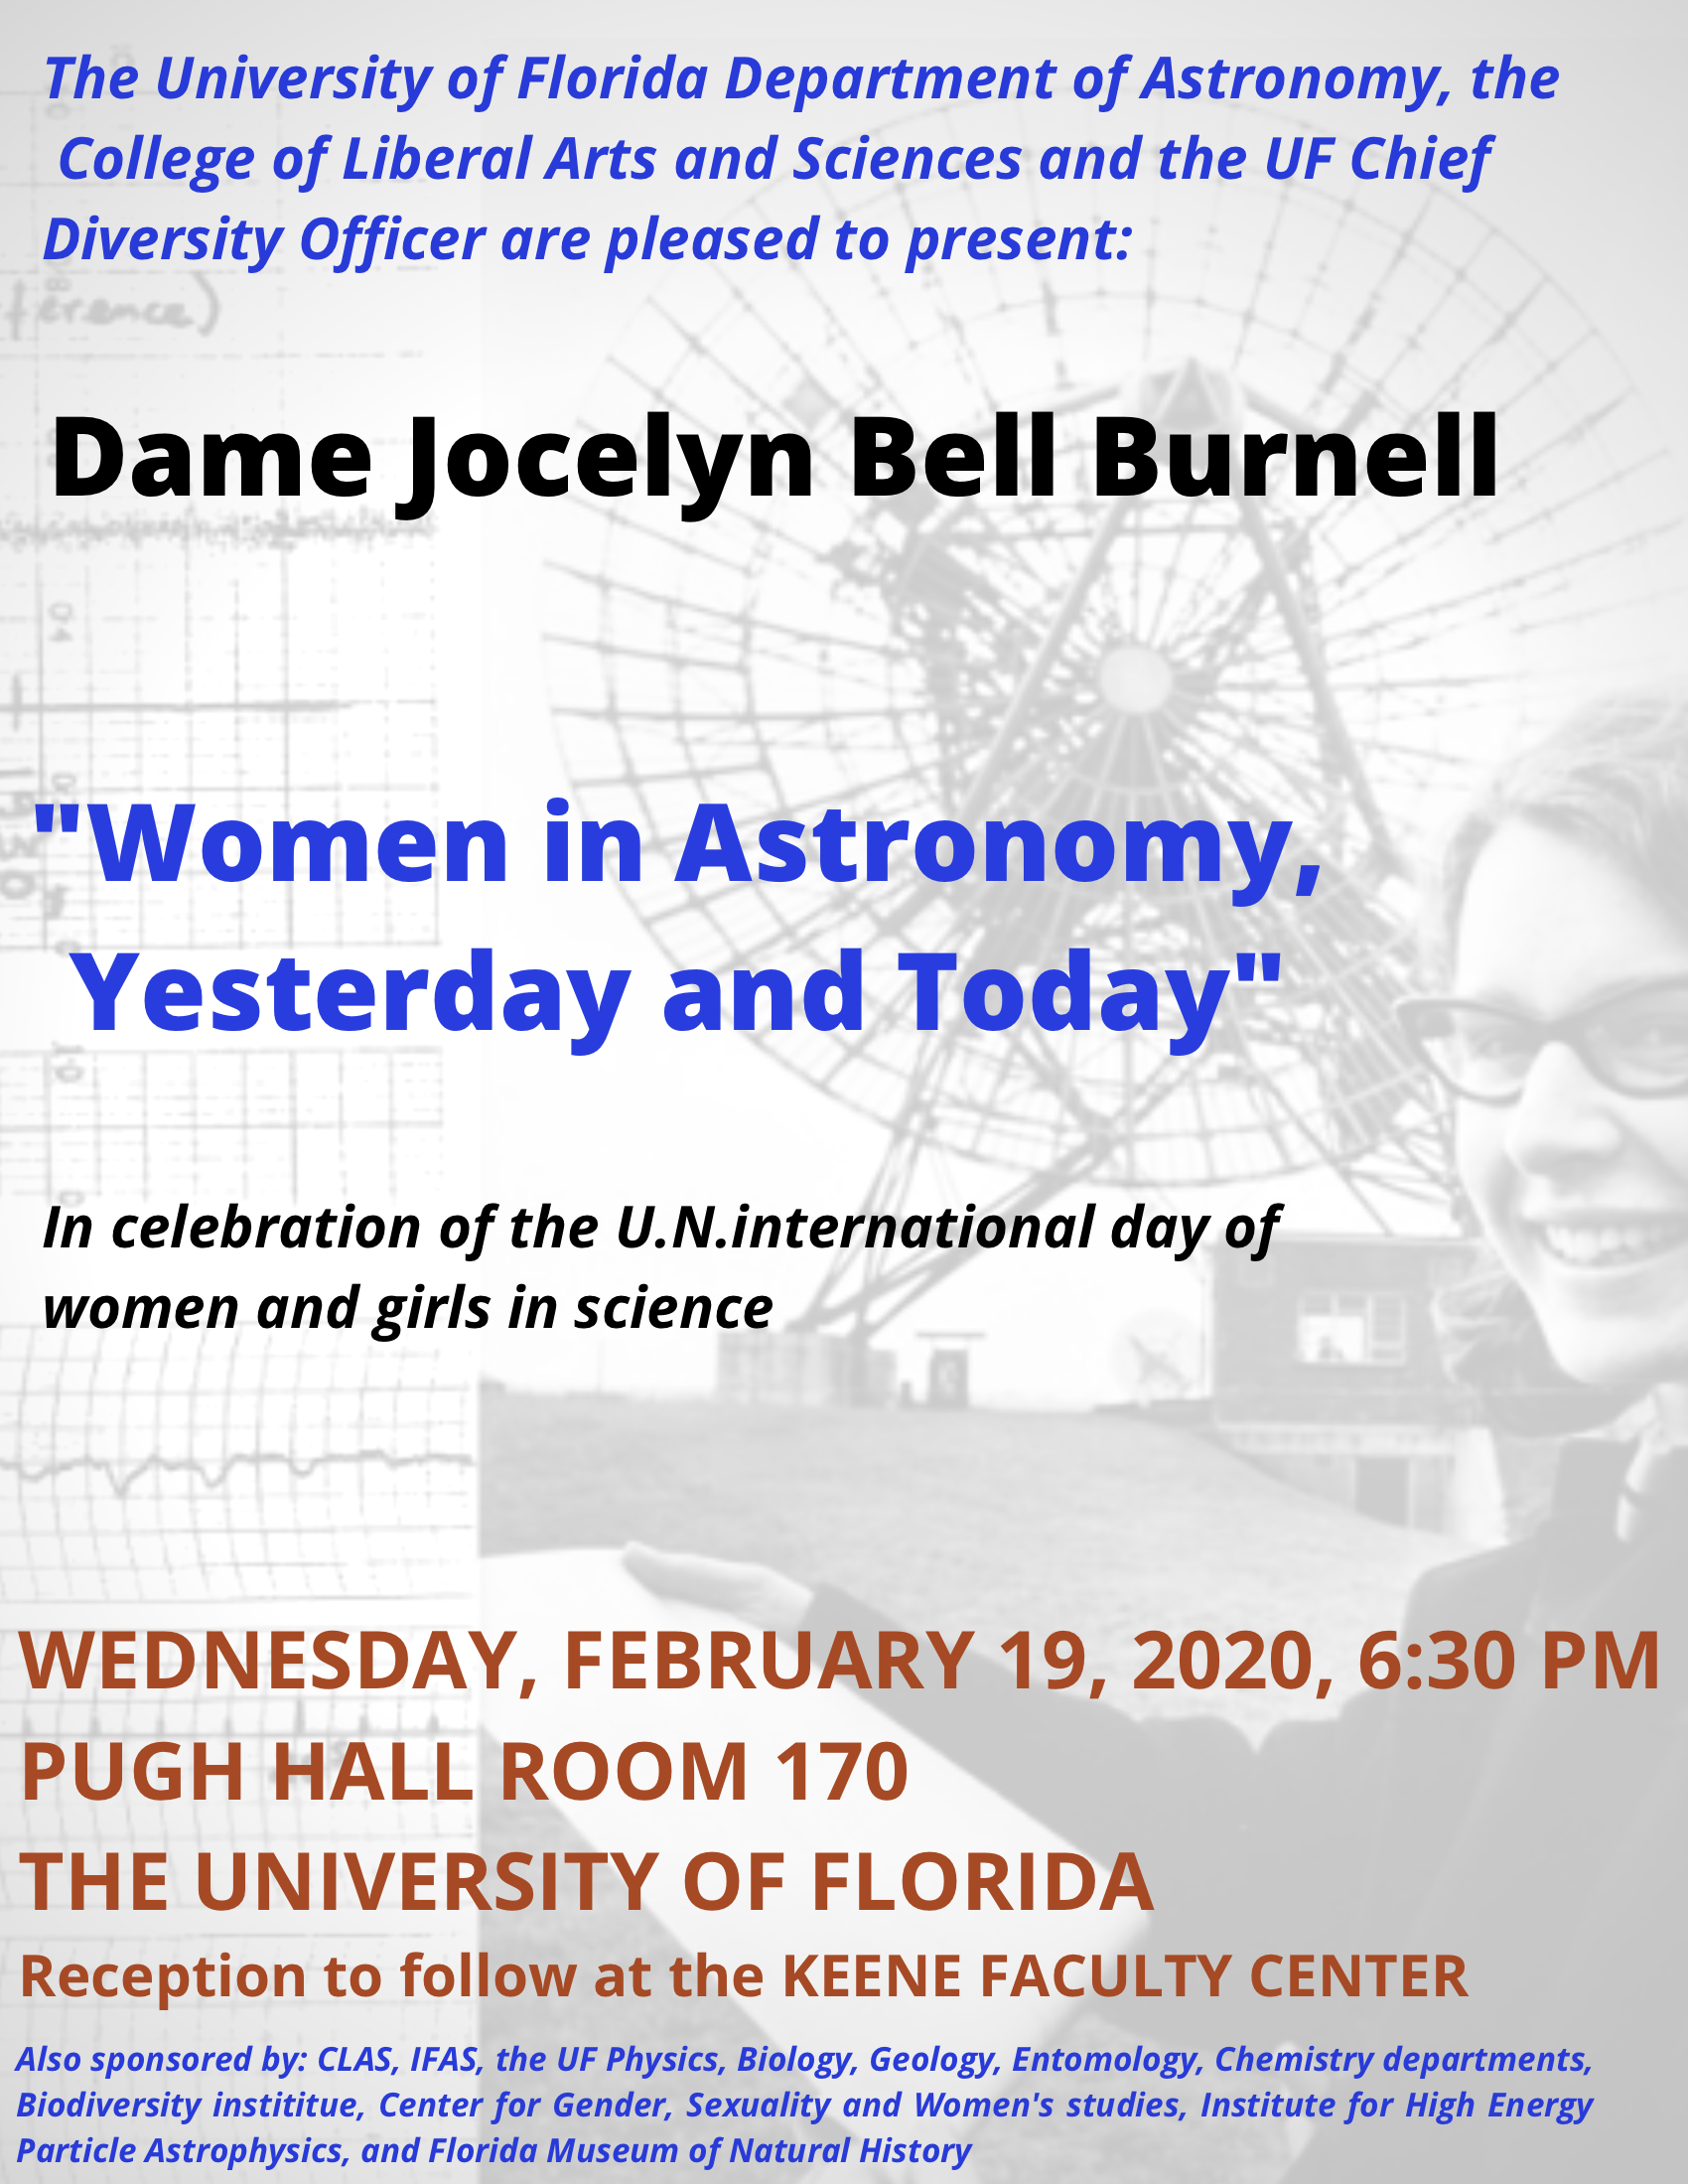 Dame Jocelyn Bell Burnell Visit on February 19